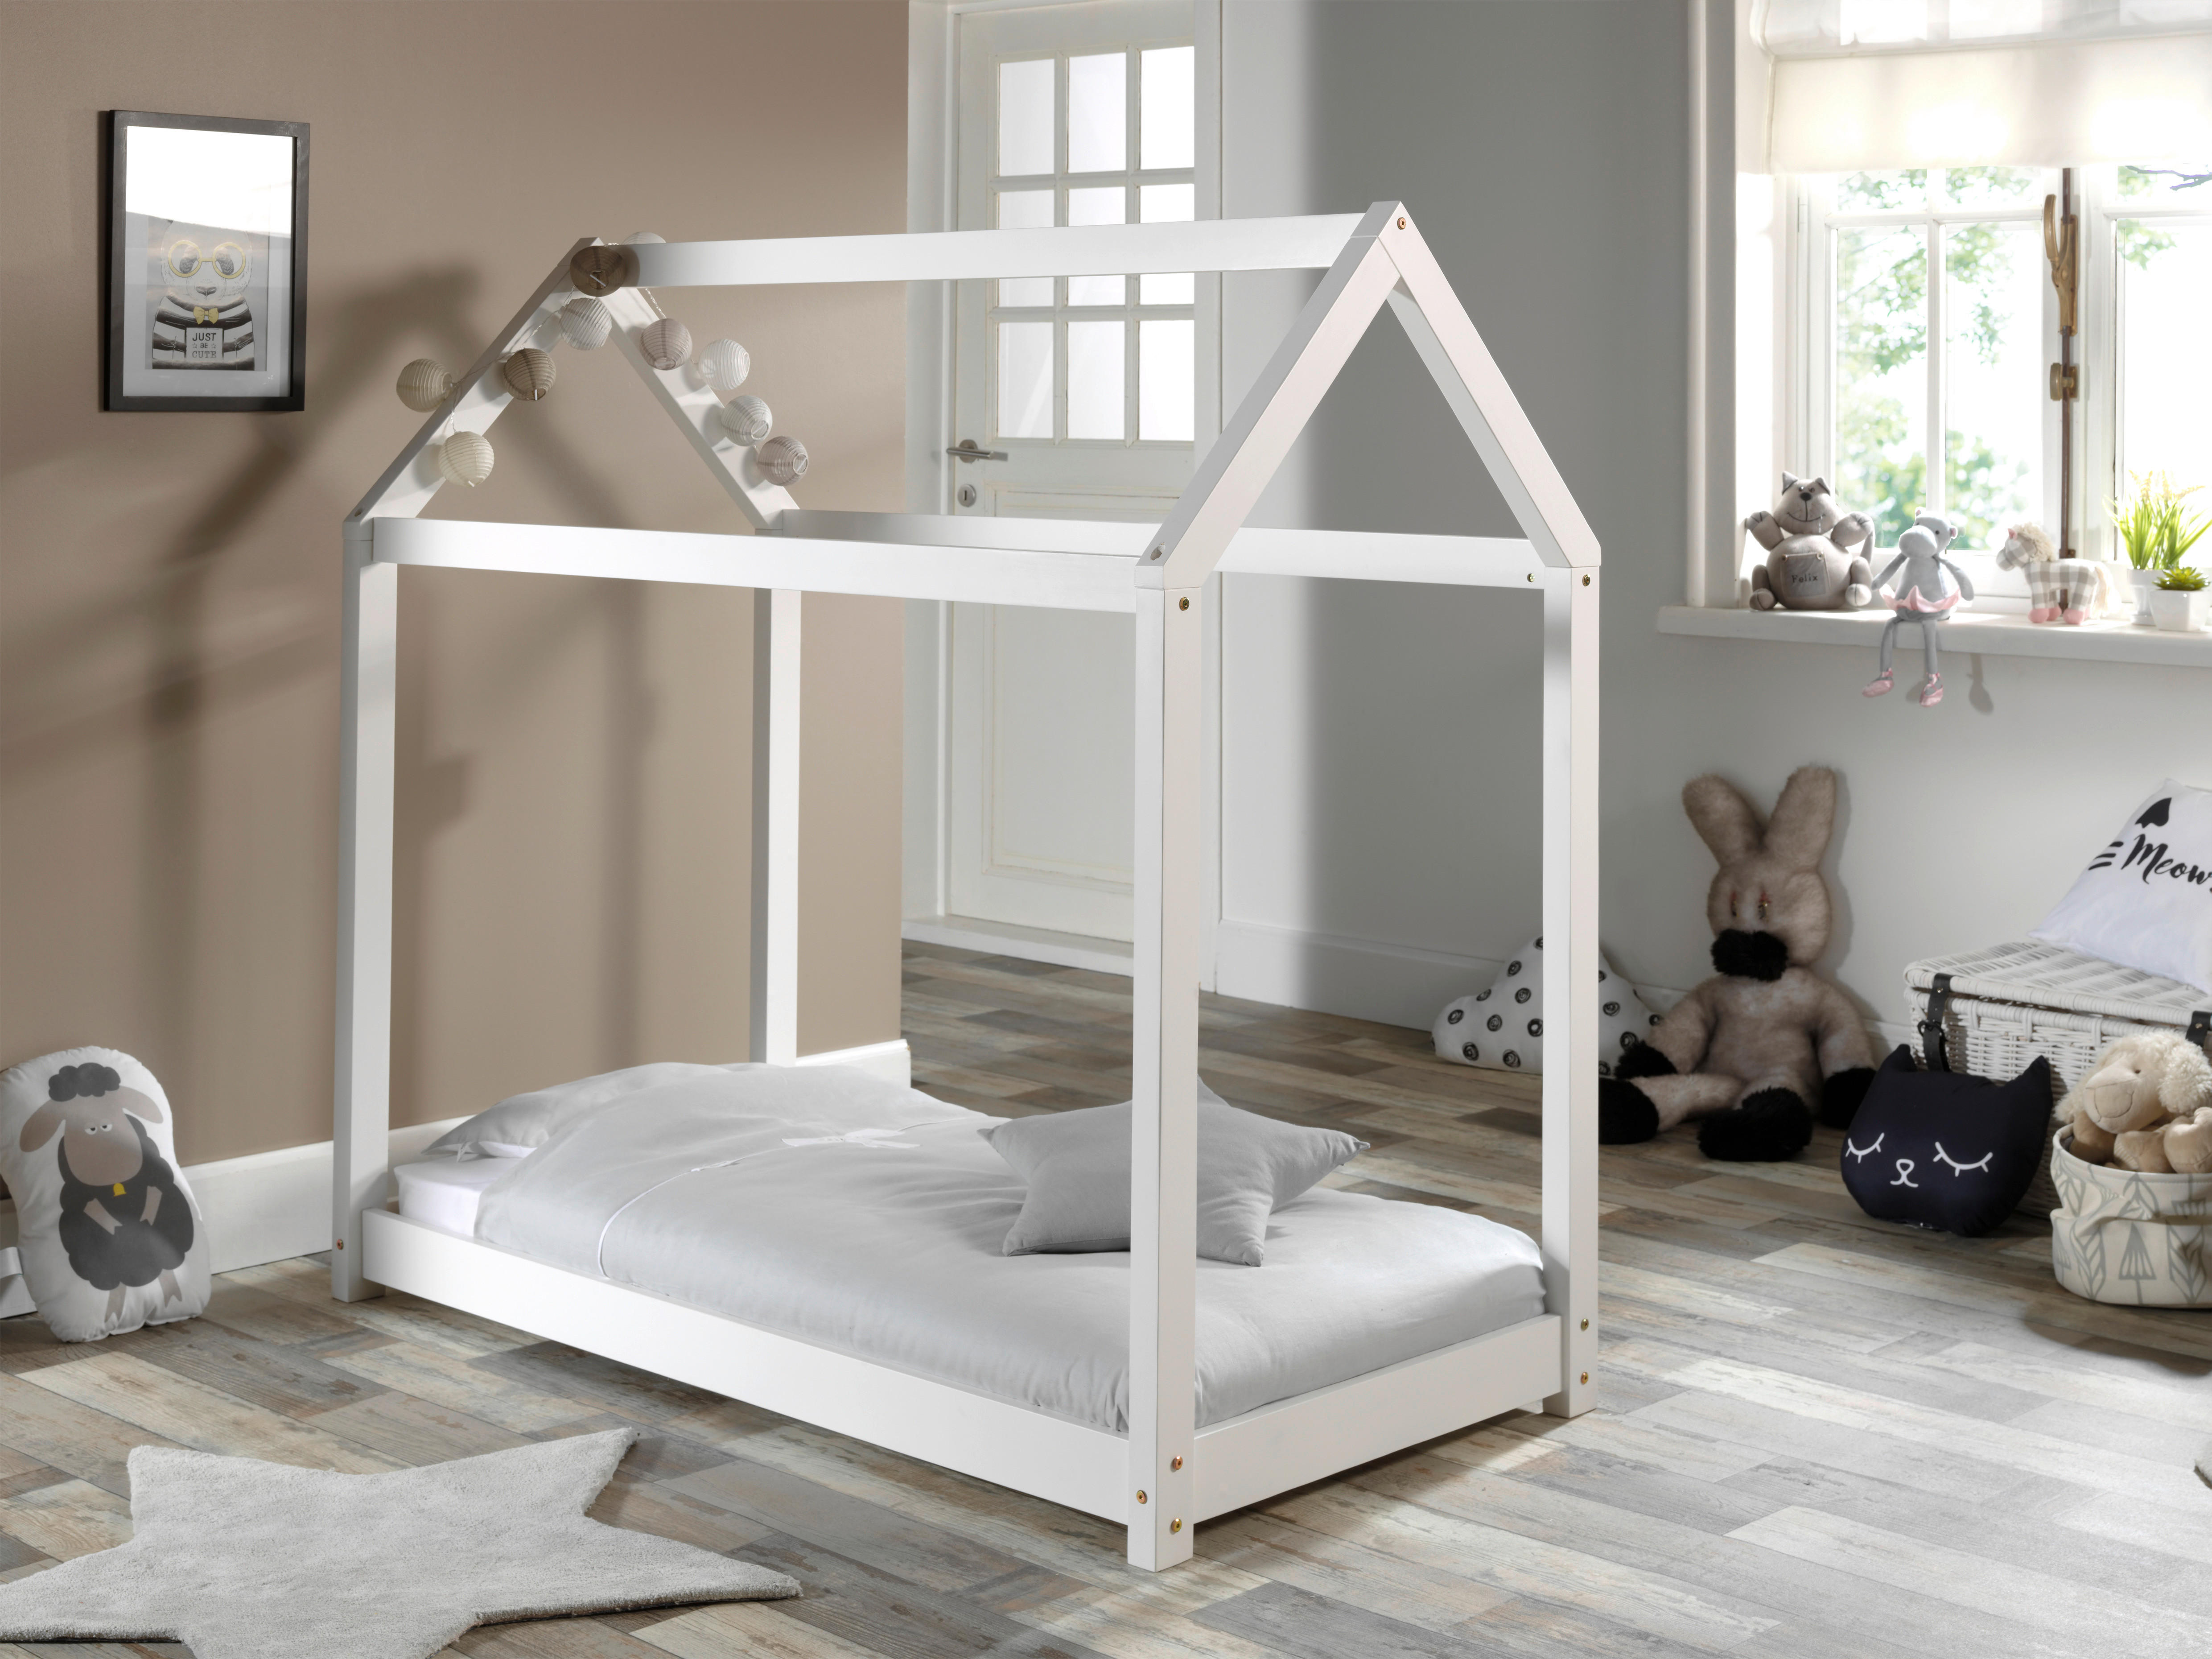 Montessori-Bett 70/140 cm  in Weiß  - Weiß, Natur, Holz/Textil (70/140cm) - MID.YOU